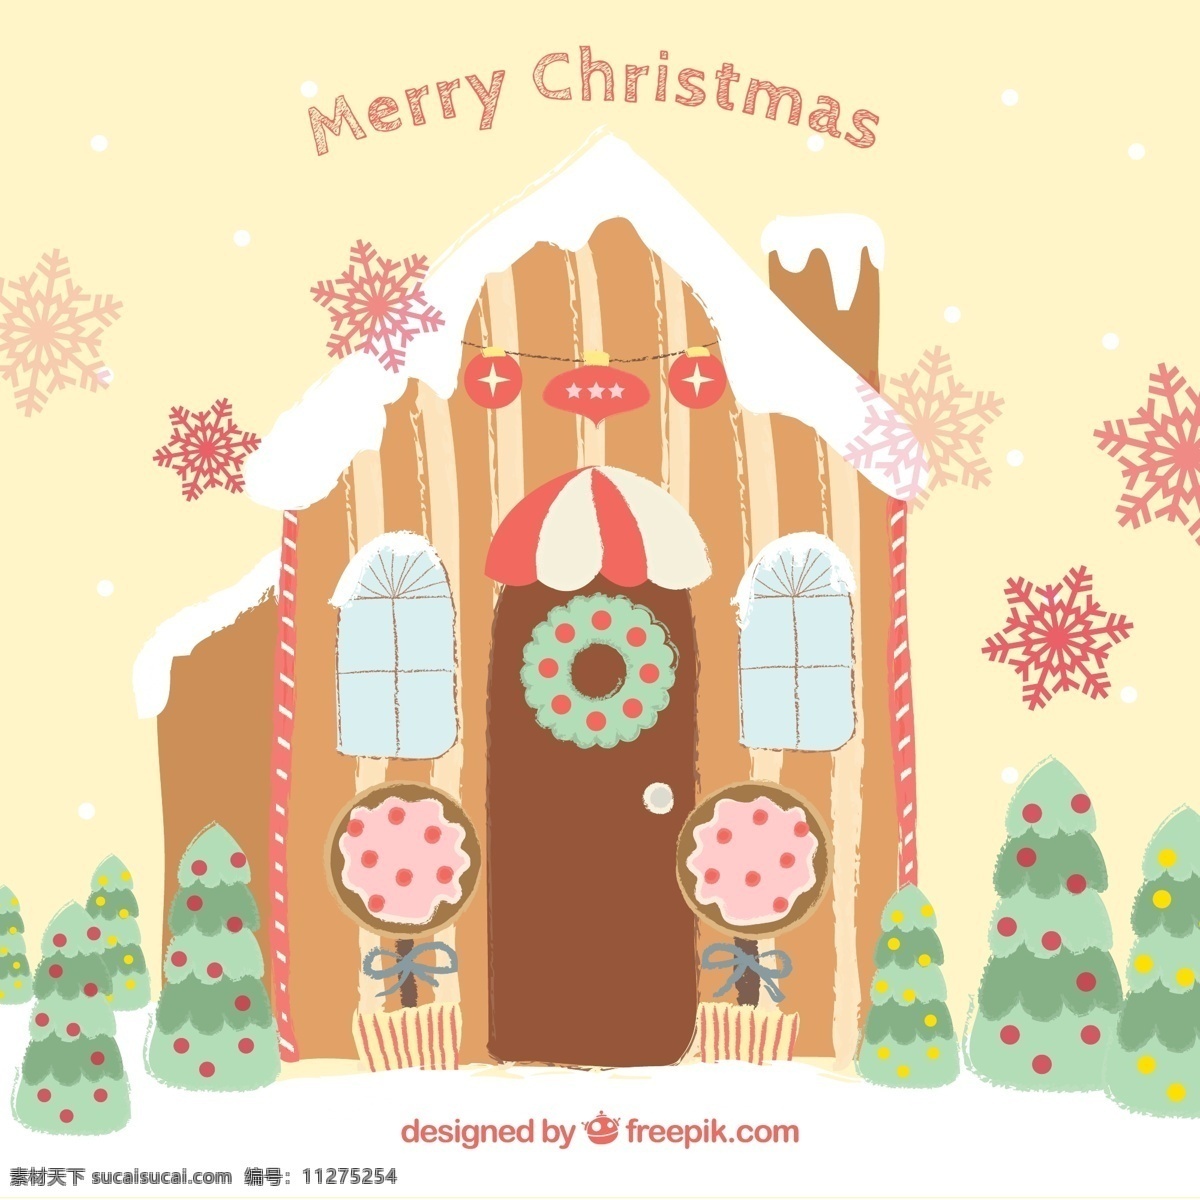 卡通 圣诞节 小屋 贺卡 矢量 雪花 圣诞树 房屋 merry christmas 矢量图